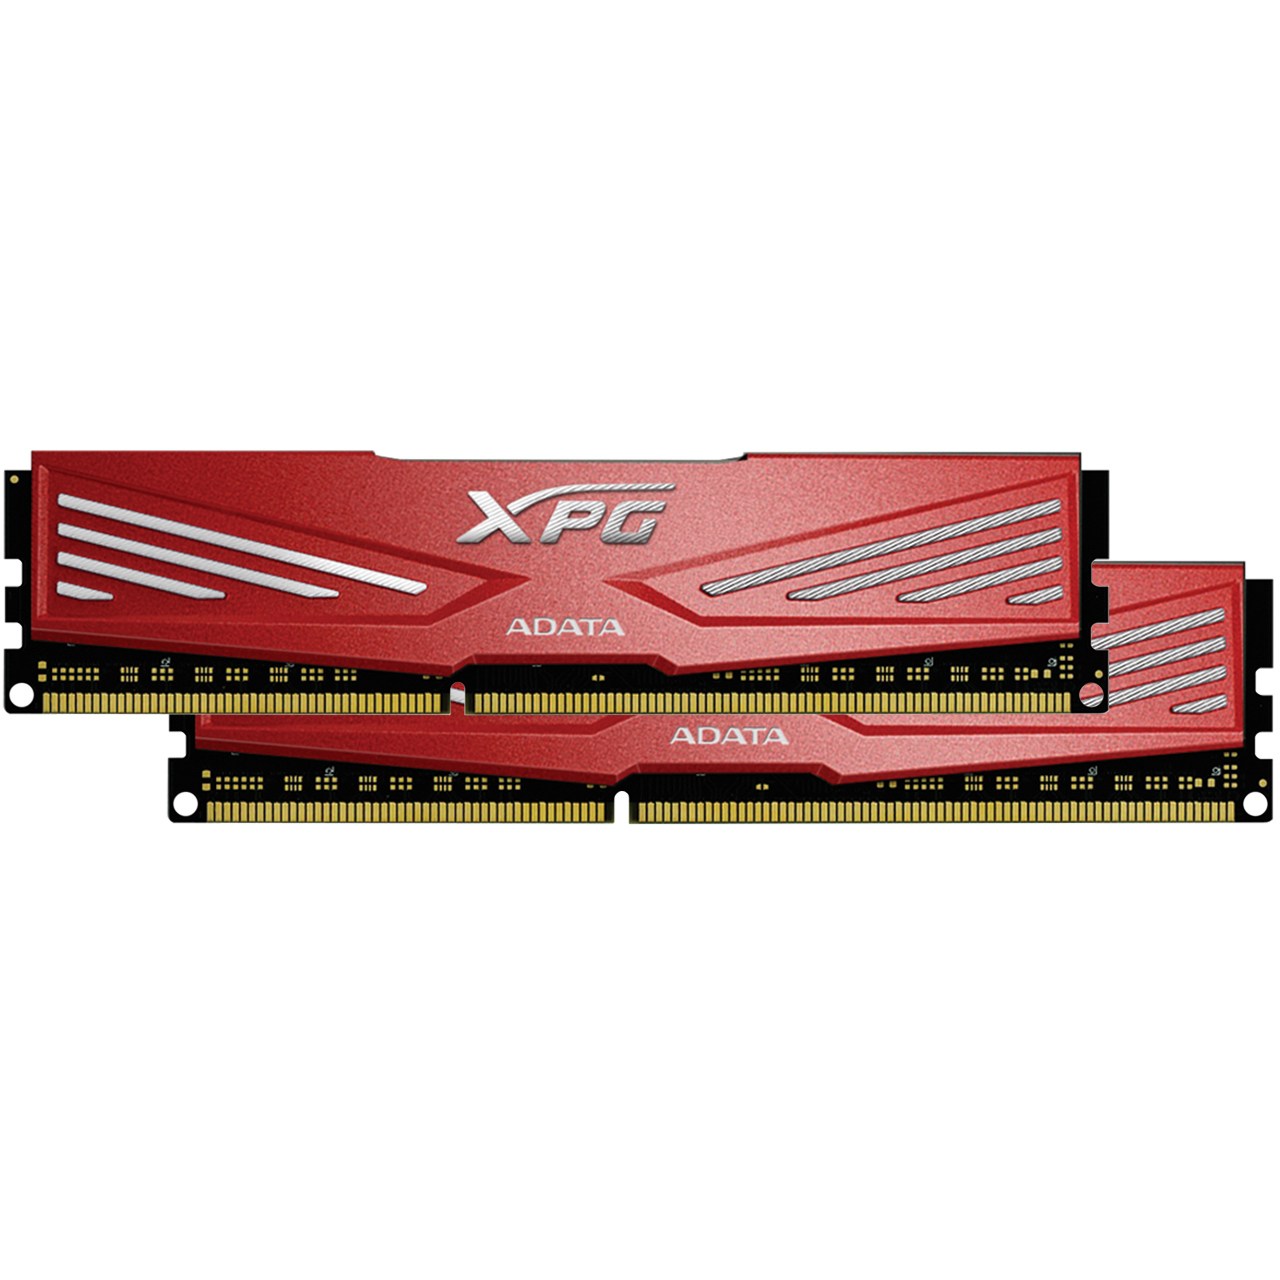 رم دسکتاپ DDR3 دو کاناله 1866 مگاهرتز CL10 ای دیتا مدل XPG V1 ظرفیت 8 گیگابایت